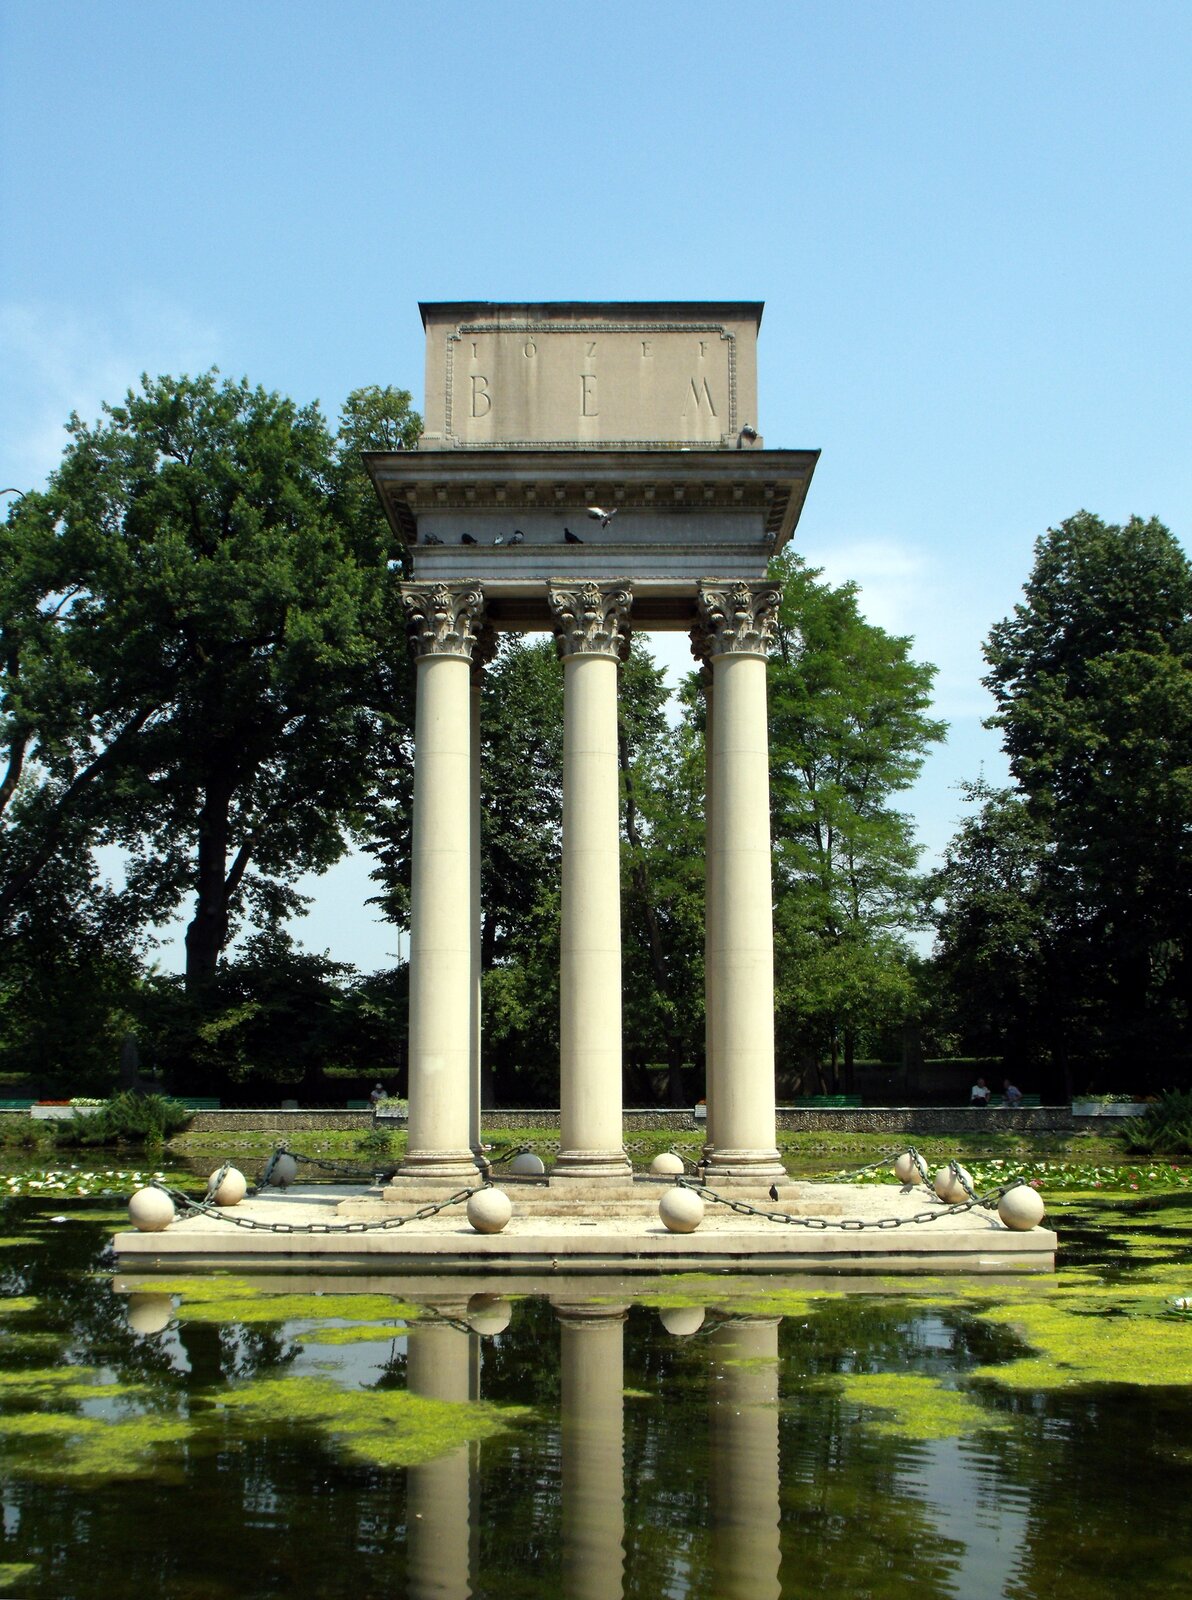 Zdjęcie przedstawia grób w postaci trzech wysokich kolumn z portykiem, na którym znajduje się napis: Józef Bem. Szczyty kolumn posiadają roślinne ornamenty. Kolumny otoczone są kamiennymi kulami połączonymi łańcuchami. Wokół konstrukcji jest staw. W tle rosną drzewa.